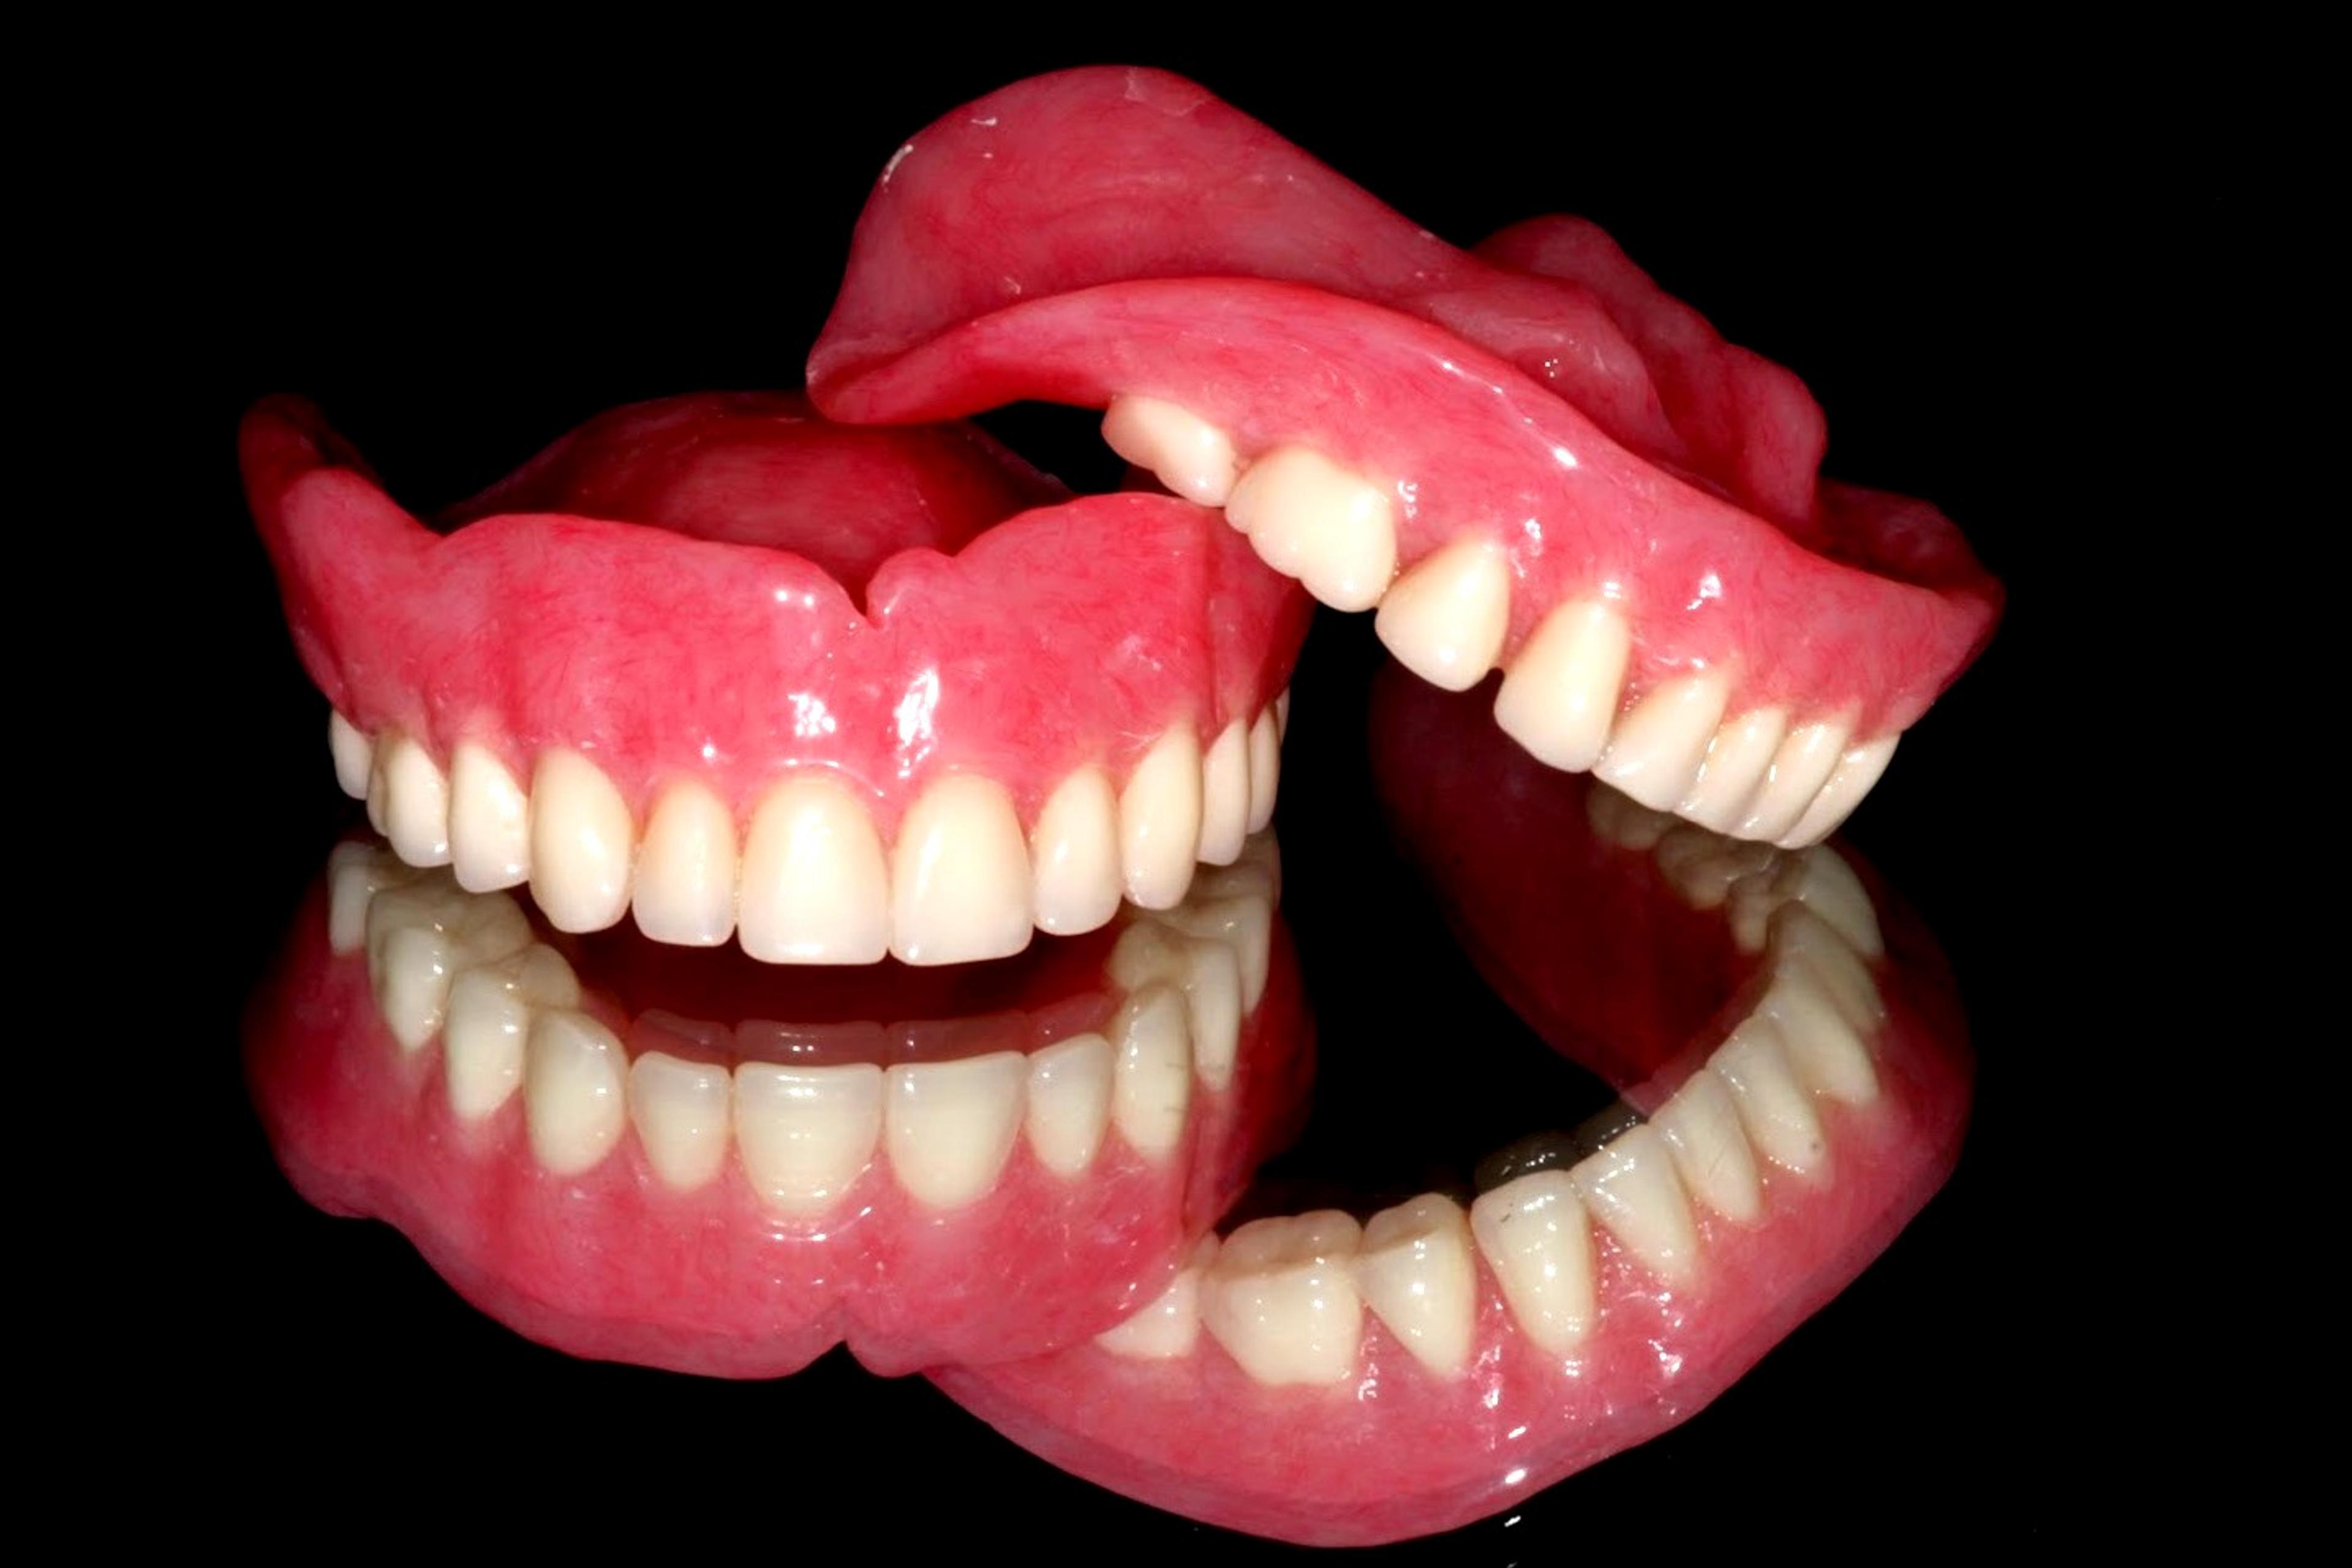 Full dentures